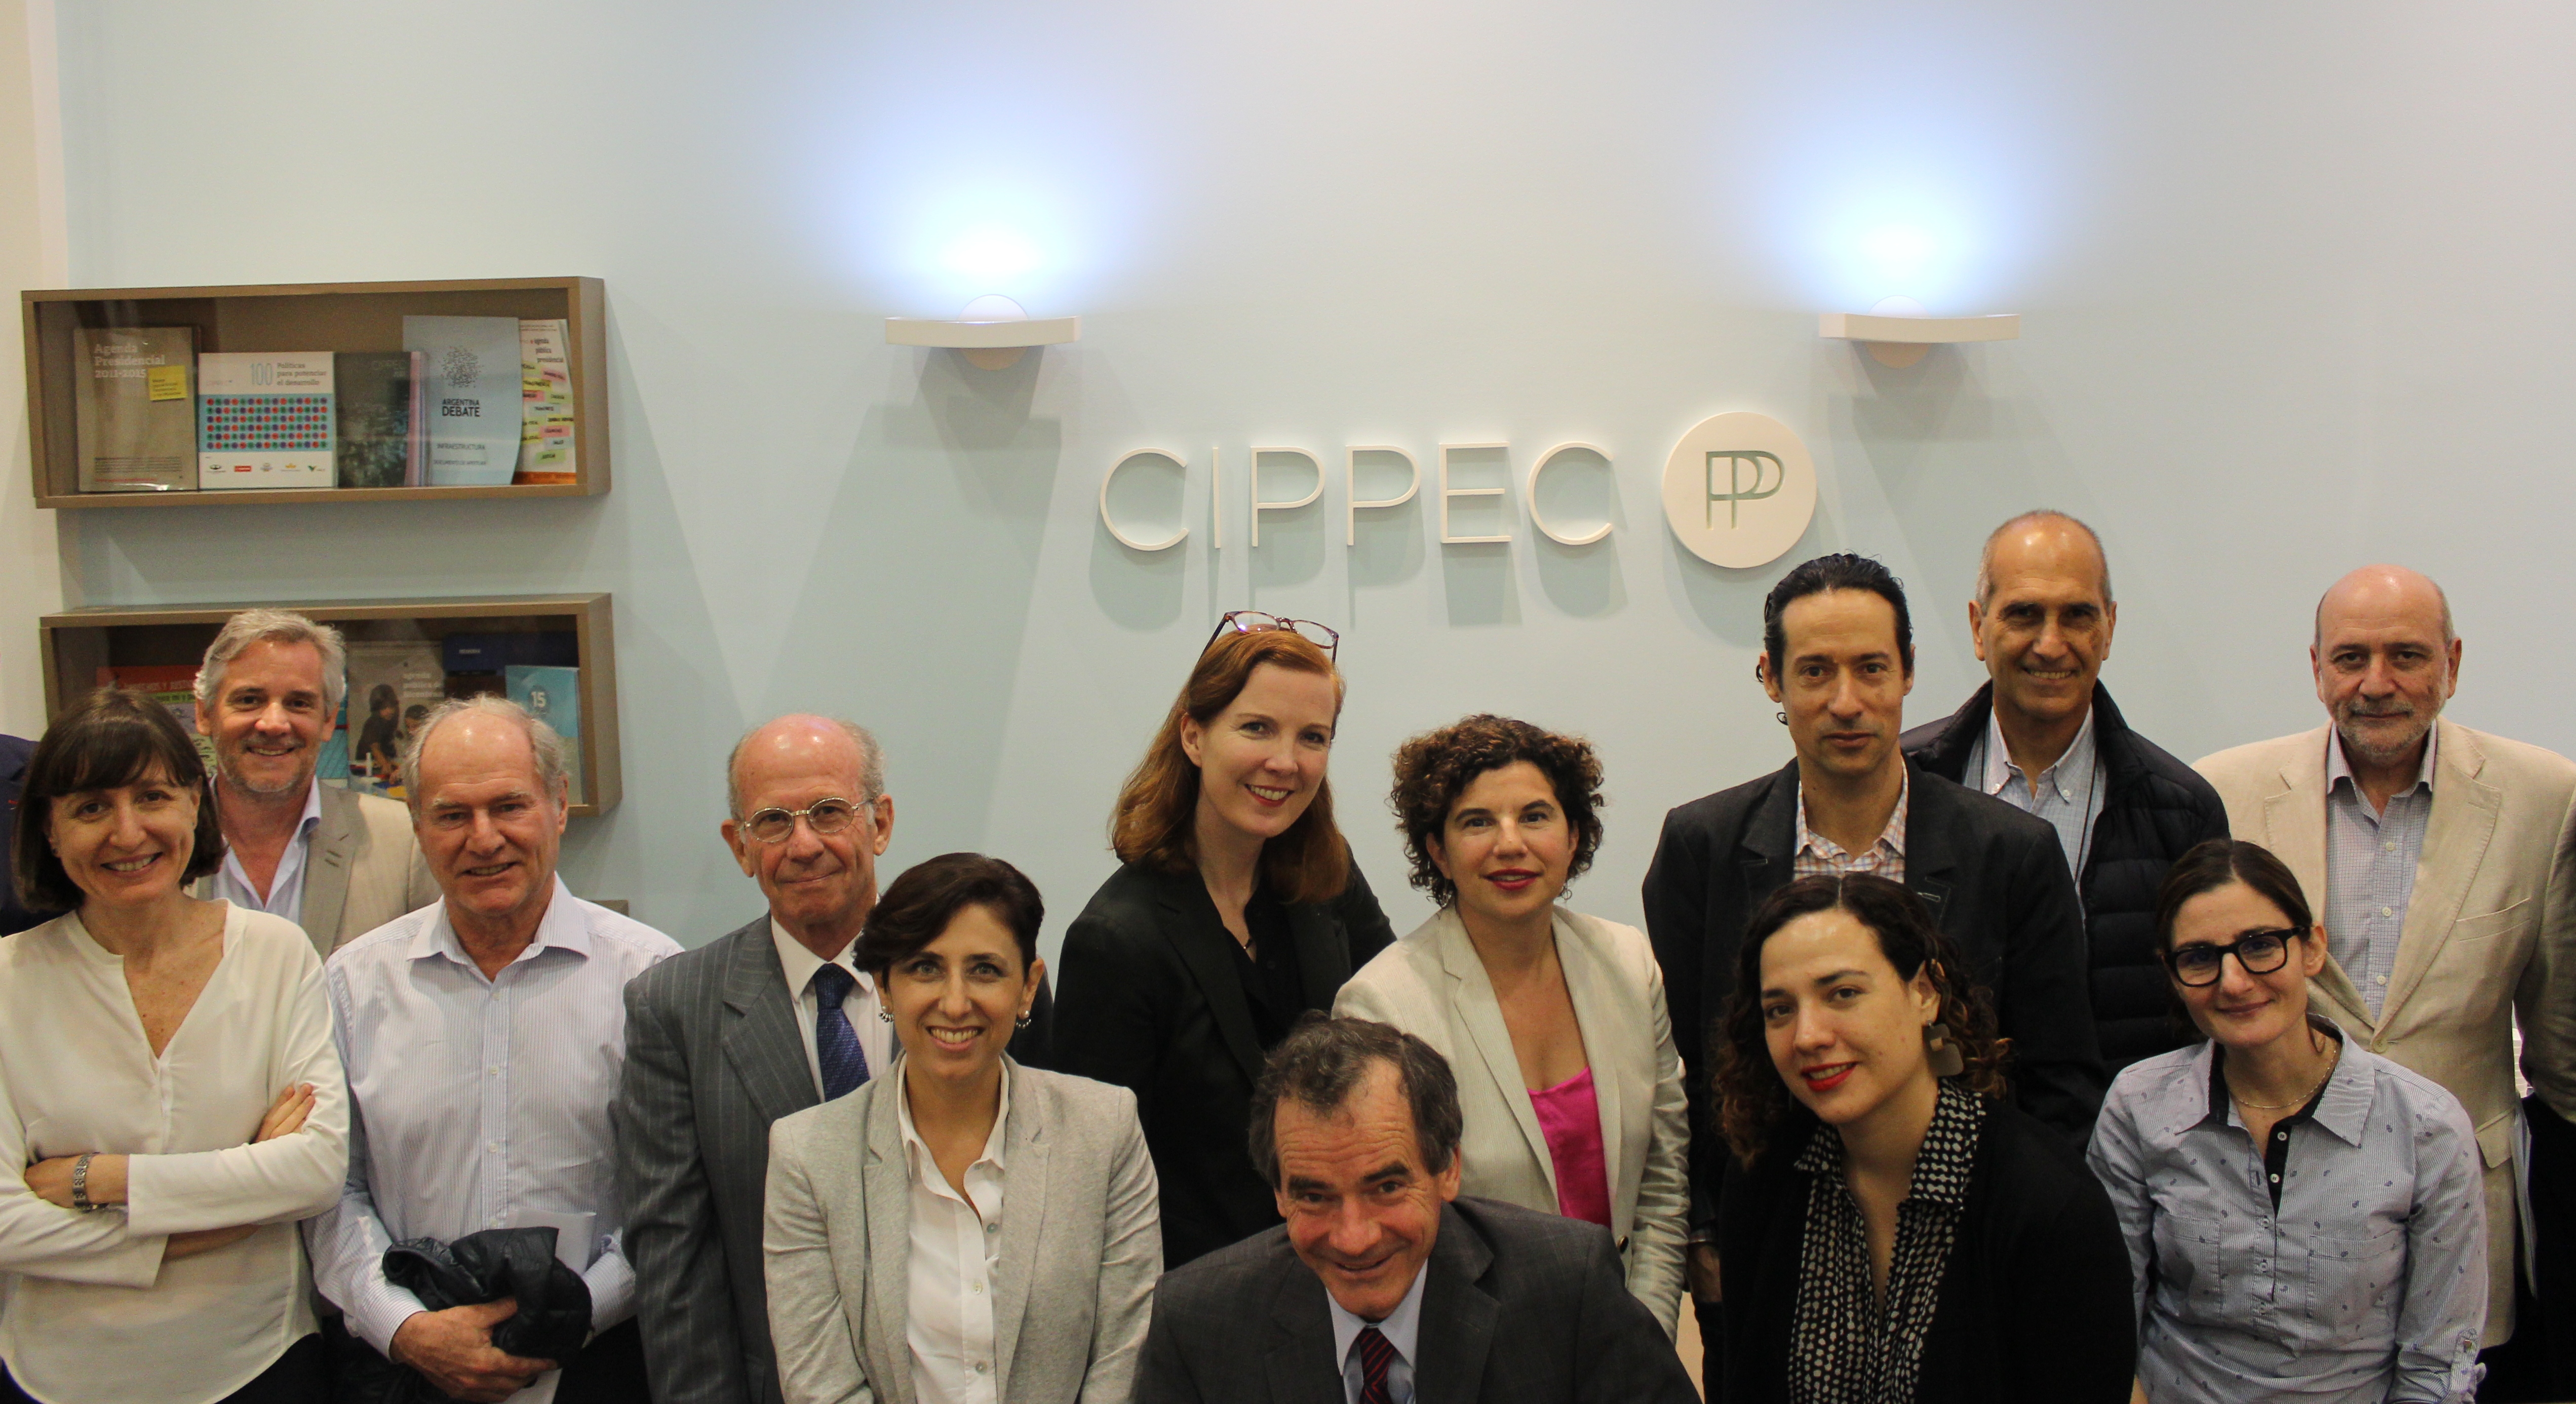 Kate Crawford, experta australiano-estadounidense, junto a Julia Pomares, Jorge Mandelbaum y parte del equipo de CIPPEC